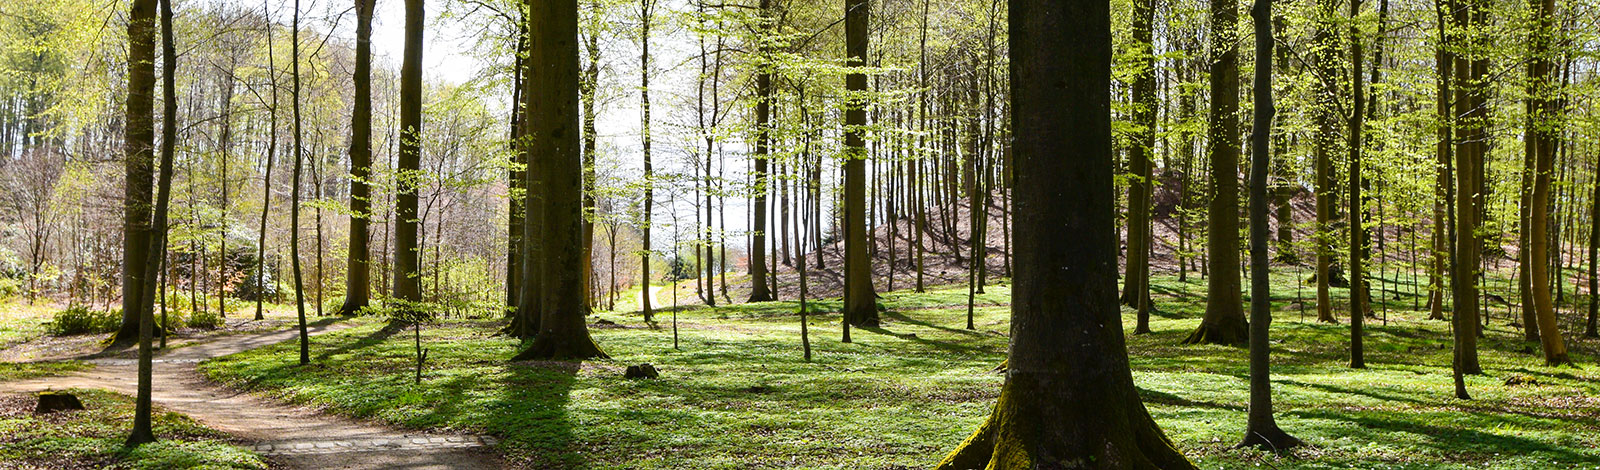 Skov og natur med plads til gåture med snak og tanker